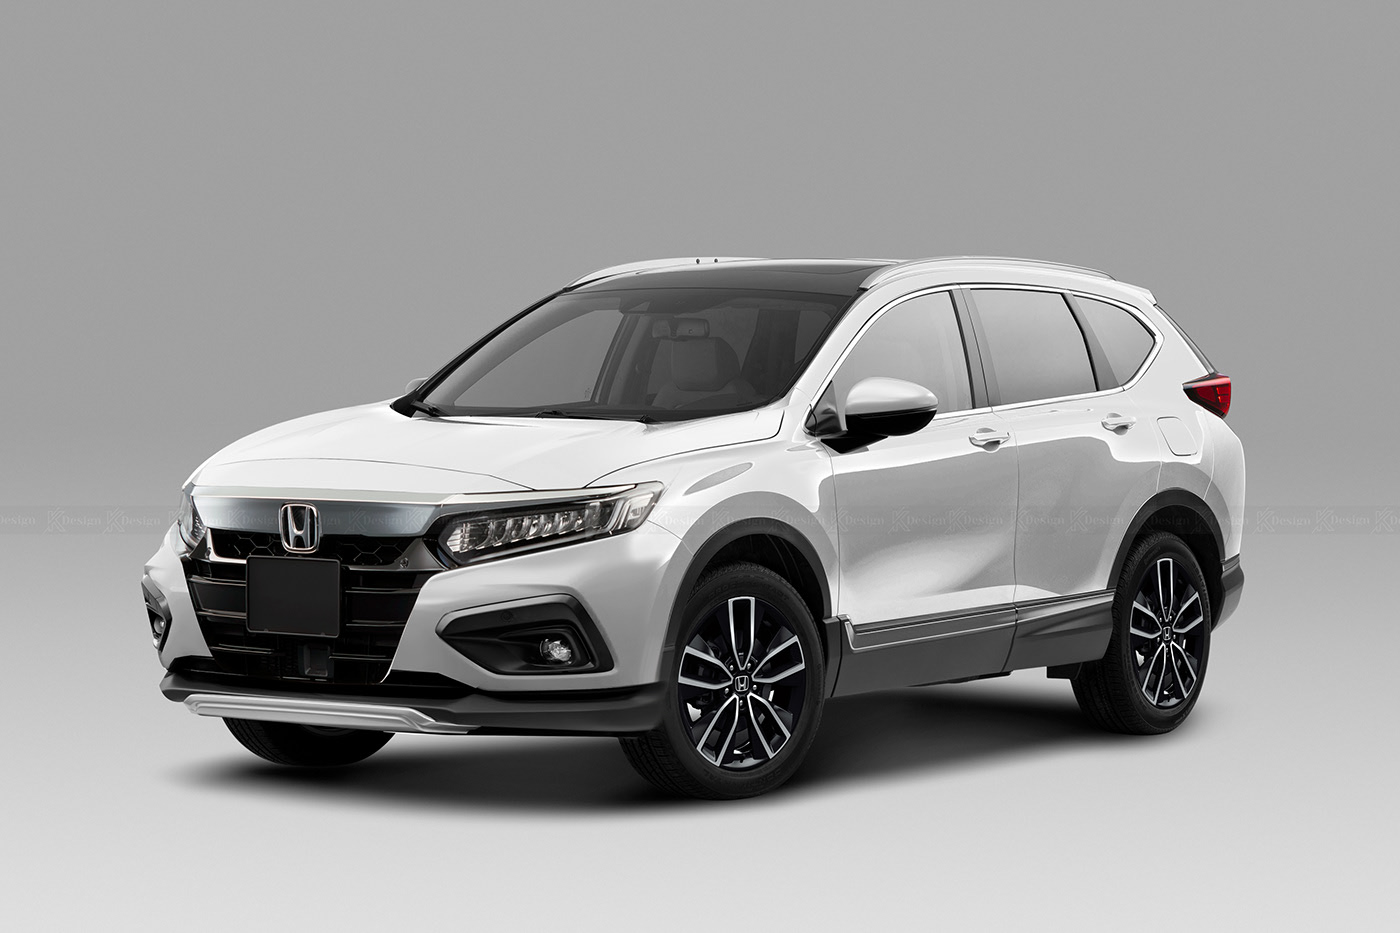 Đánh giá xe Honda CRV 2022 mới nhất Thông số kỹ thuật  Giá bán